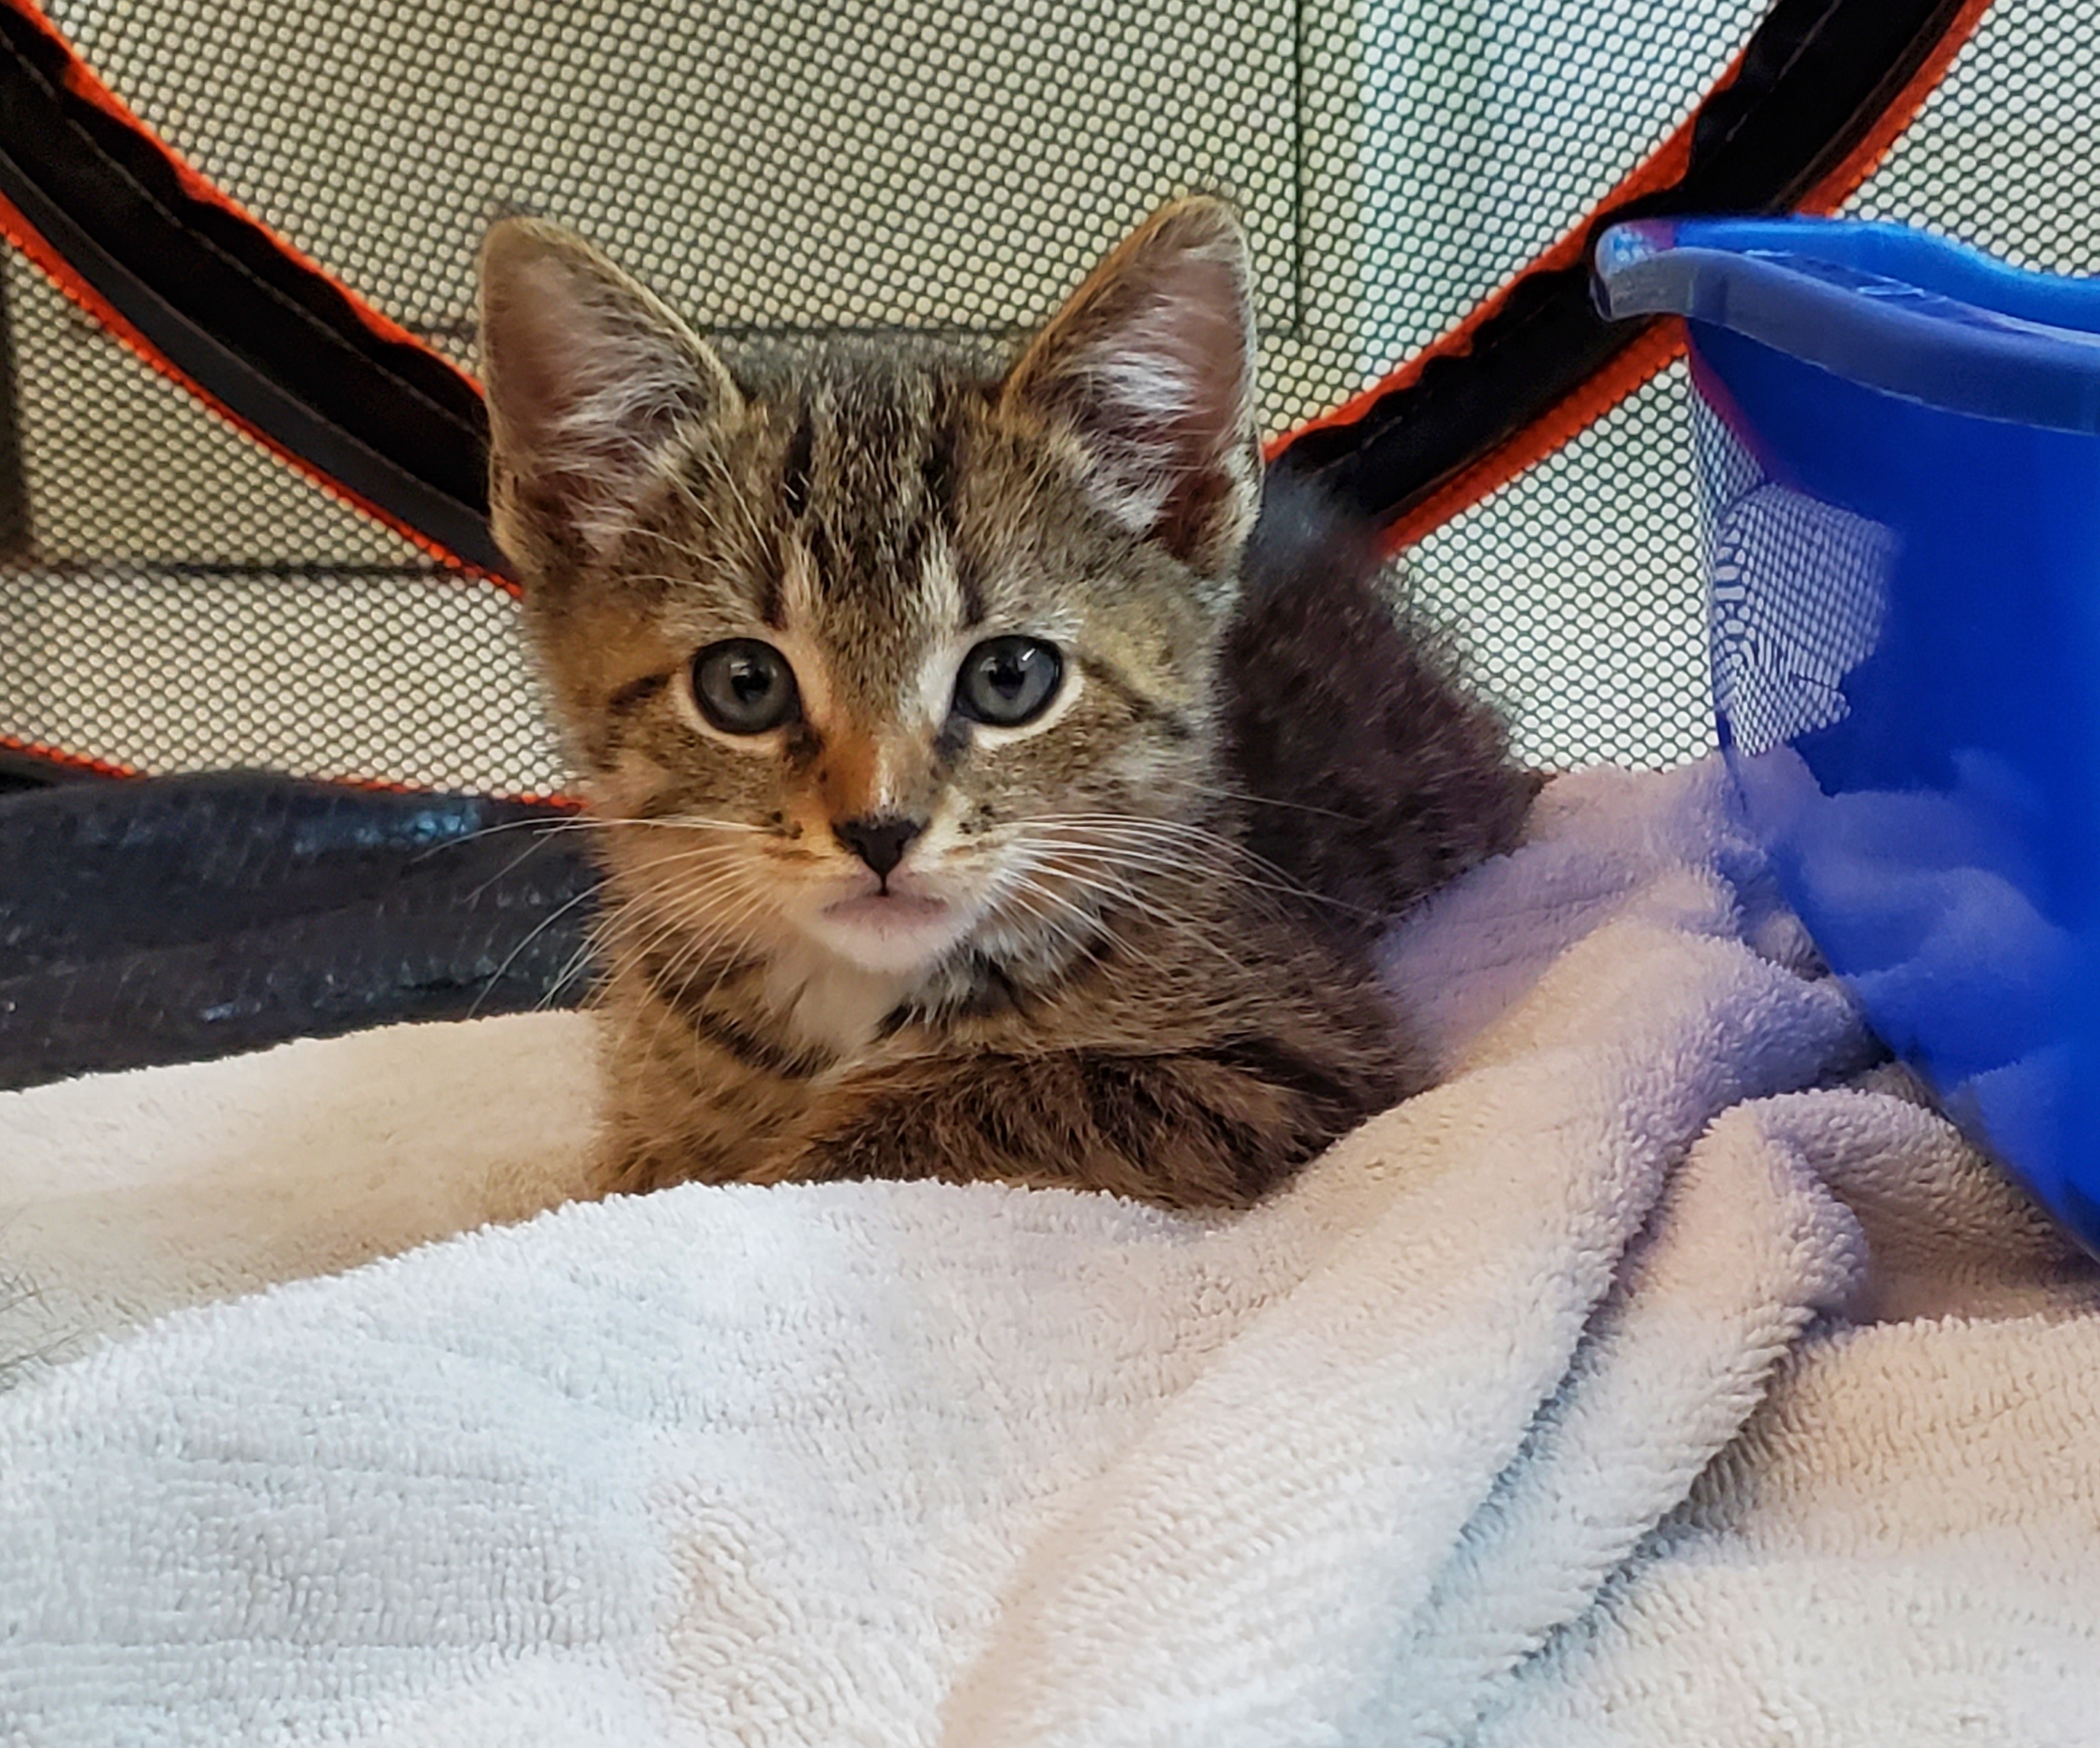 Striped baby kitten on a blanket